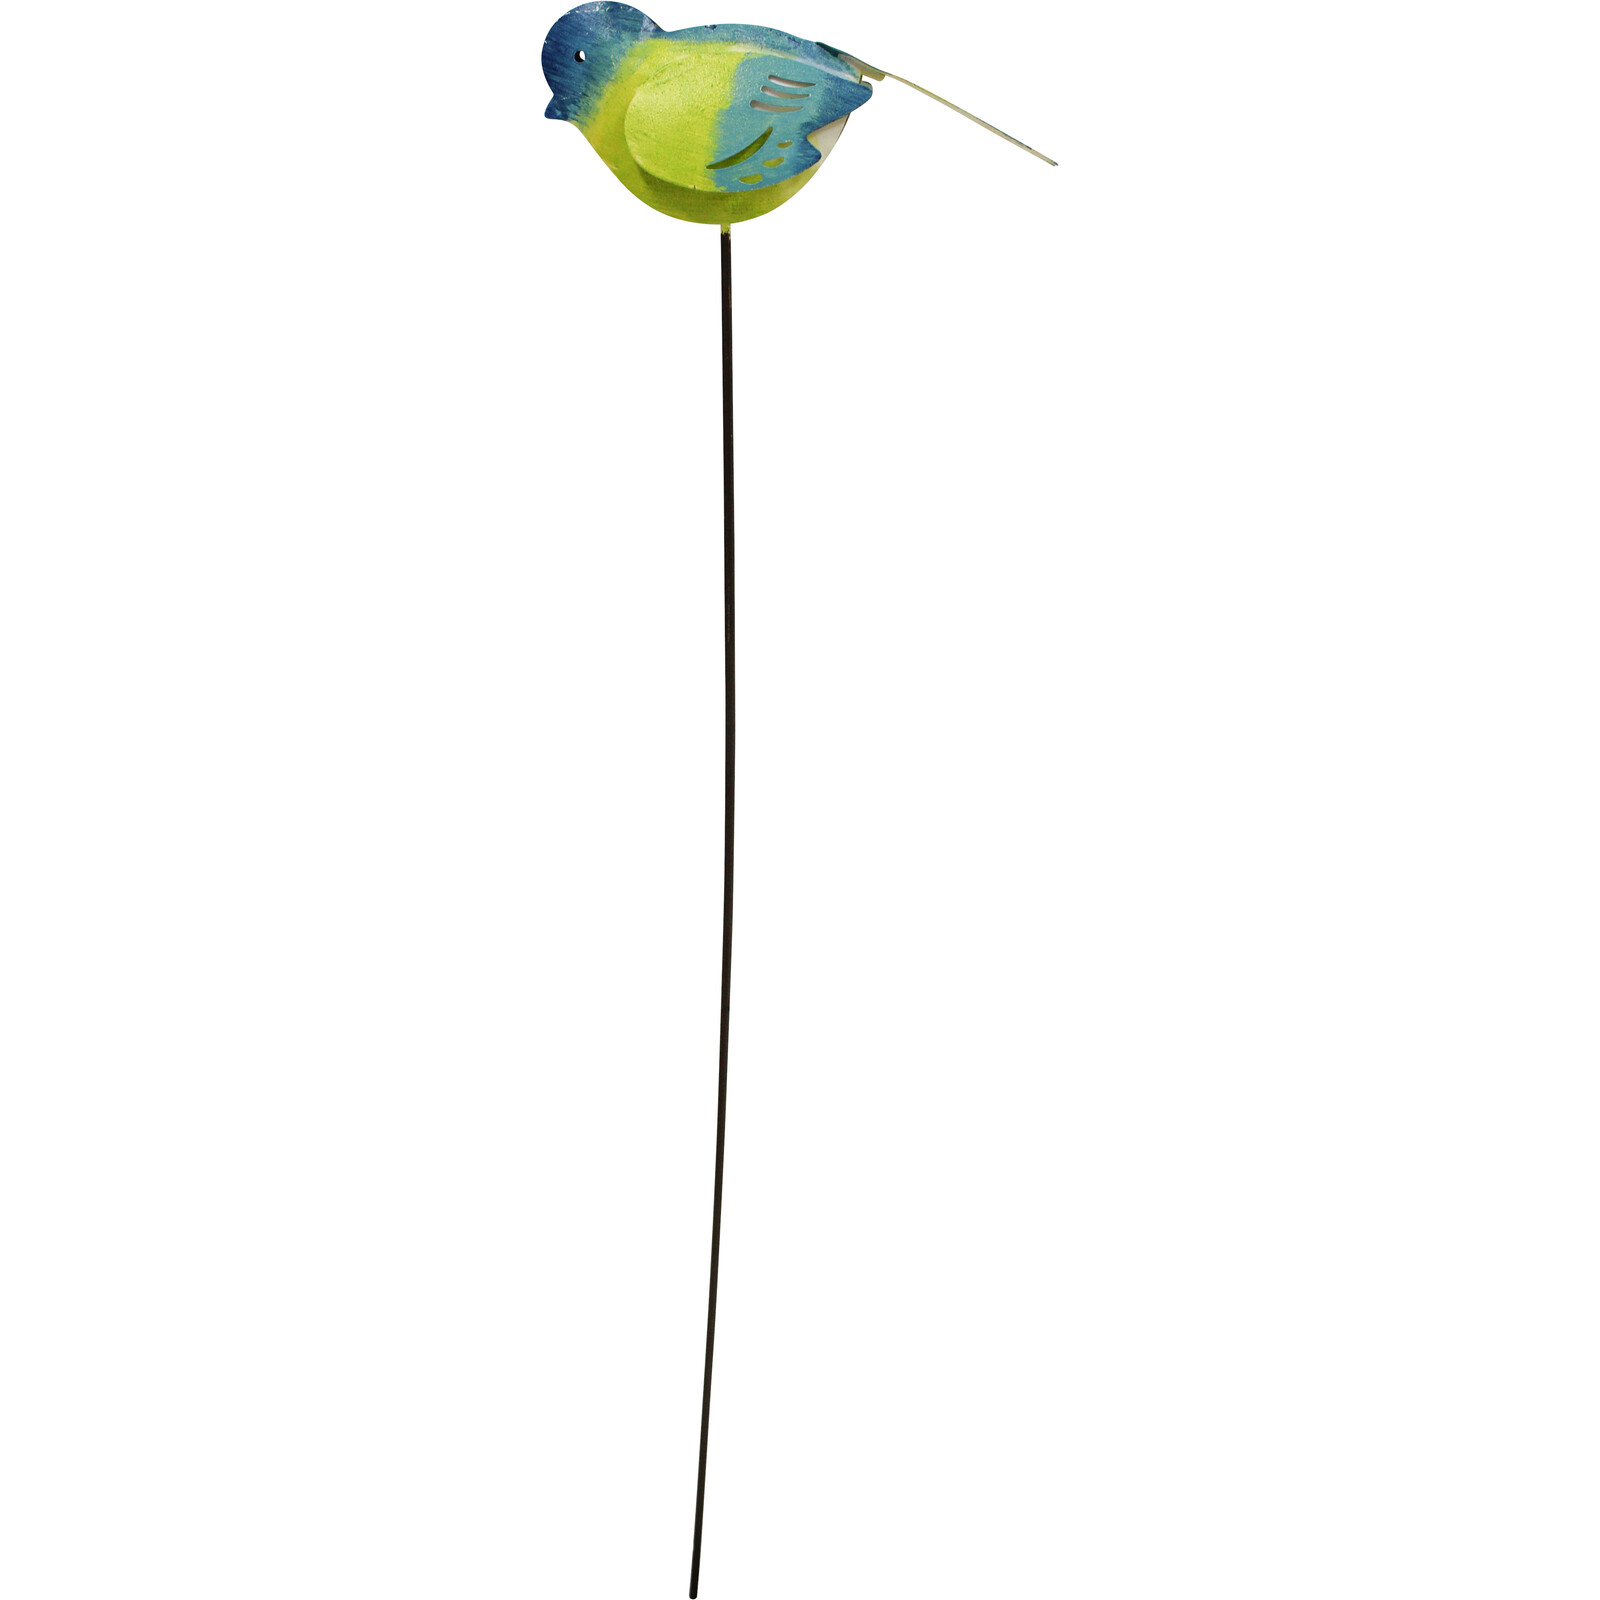 Pot Stake Bora Bora Bird Blue